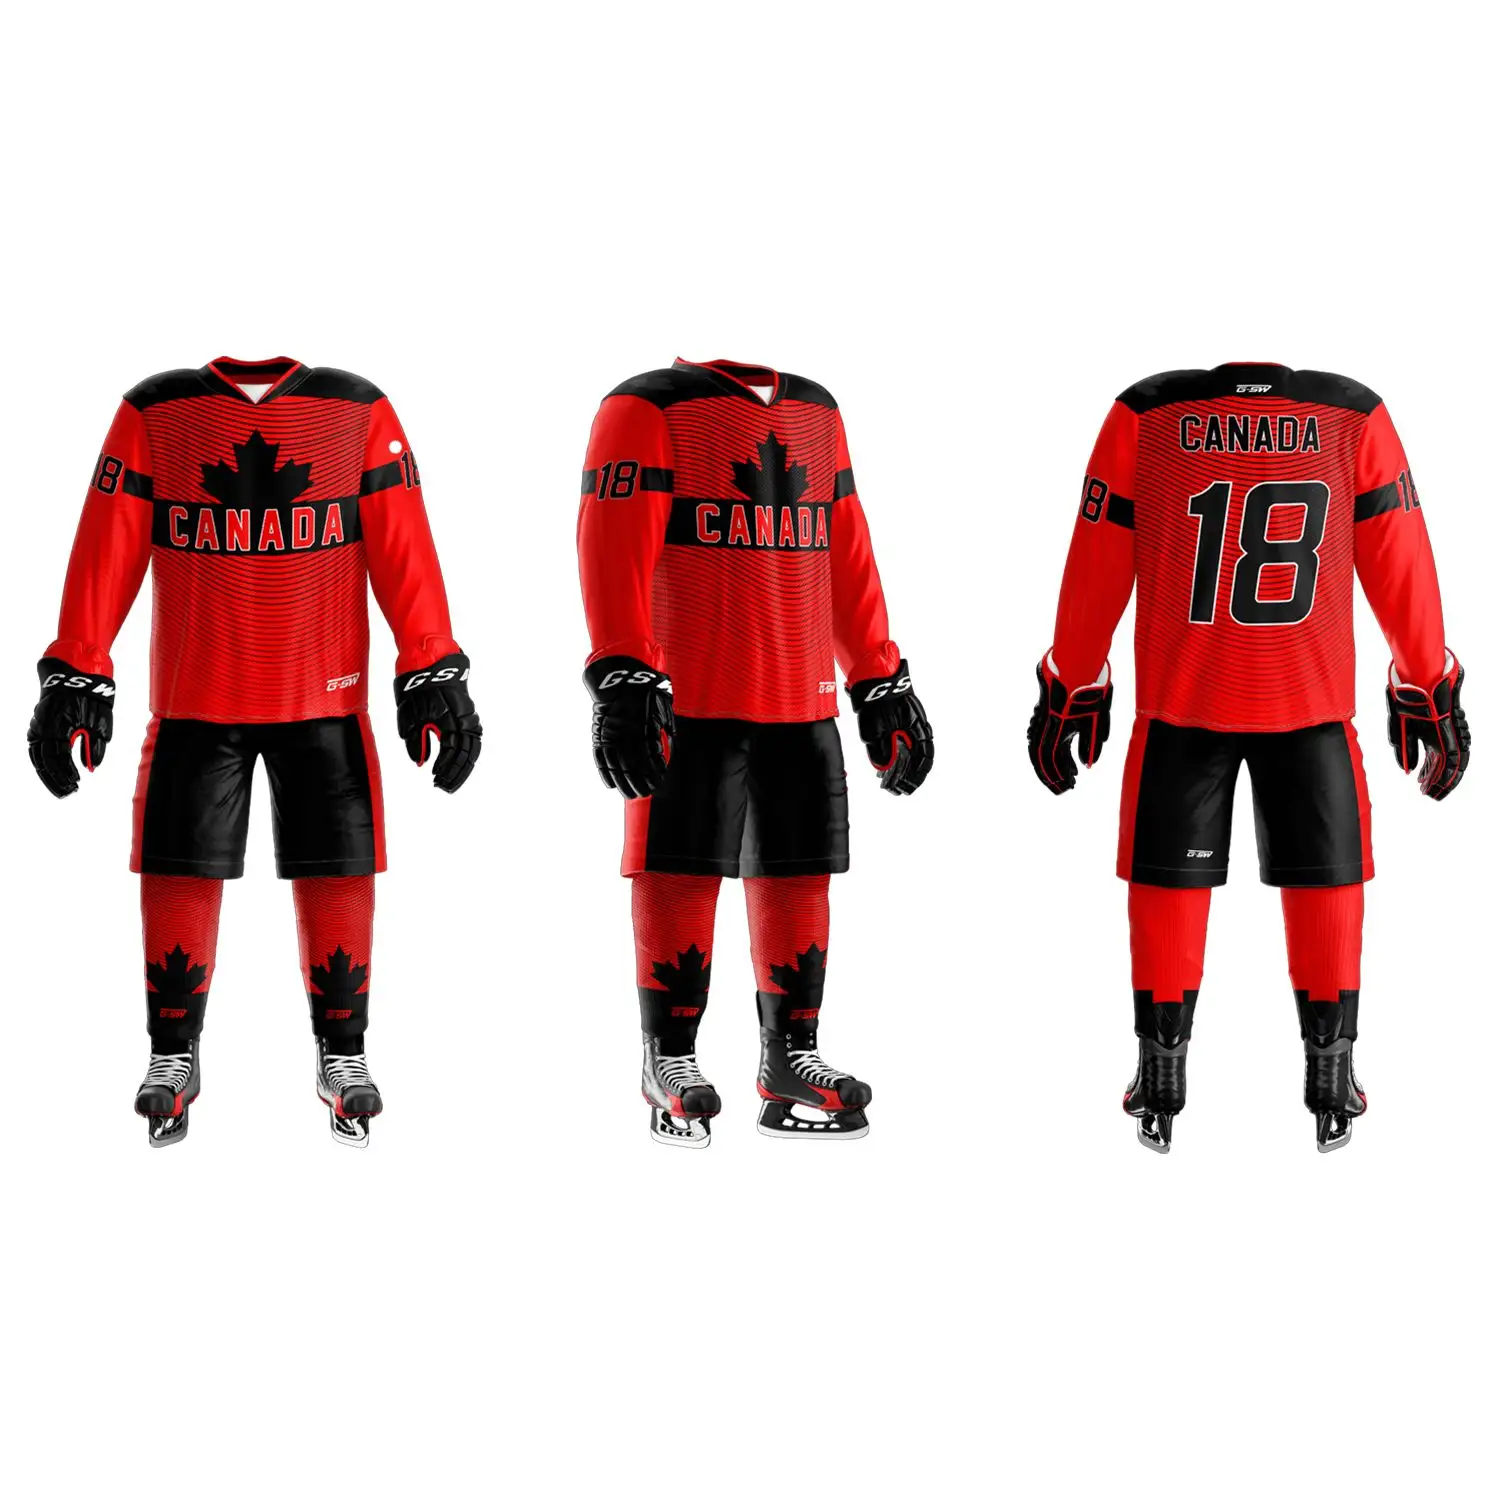 2022 erkek Premium kalite buz hokeyi jersey, özel logo çocuk boyutu yetişkin boyutu buz hokeyi üniformaları